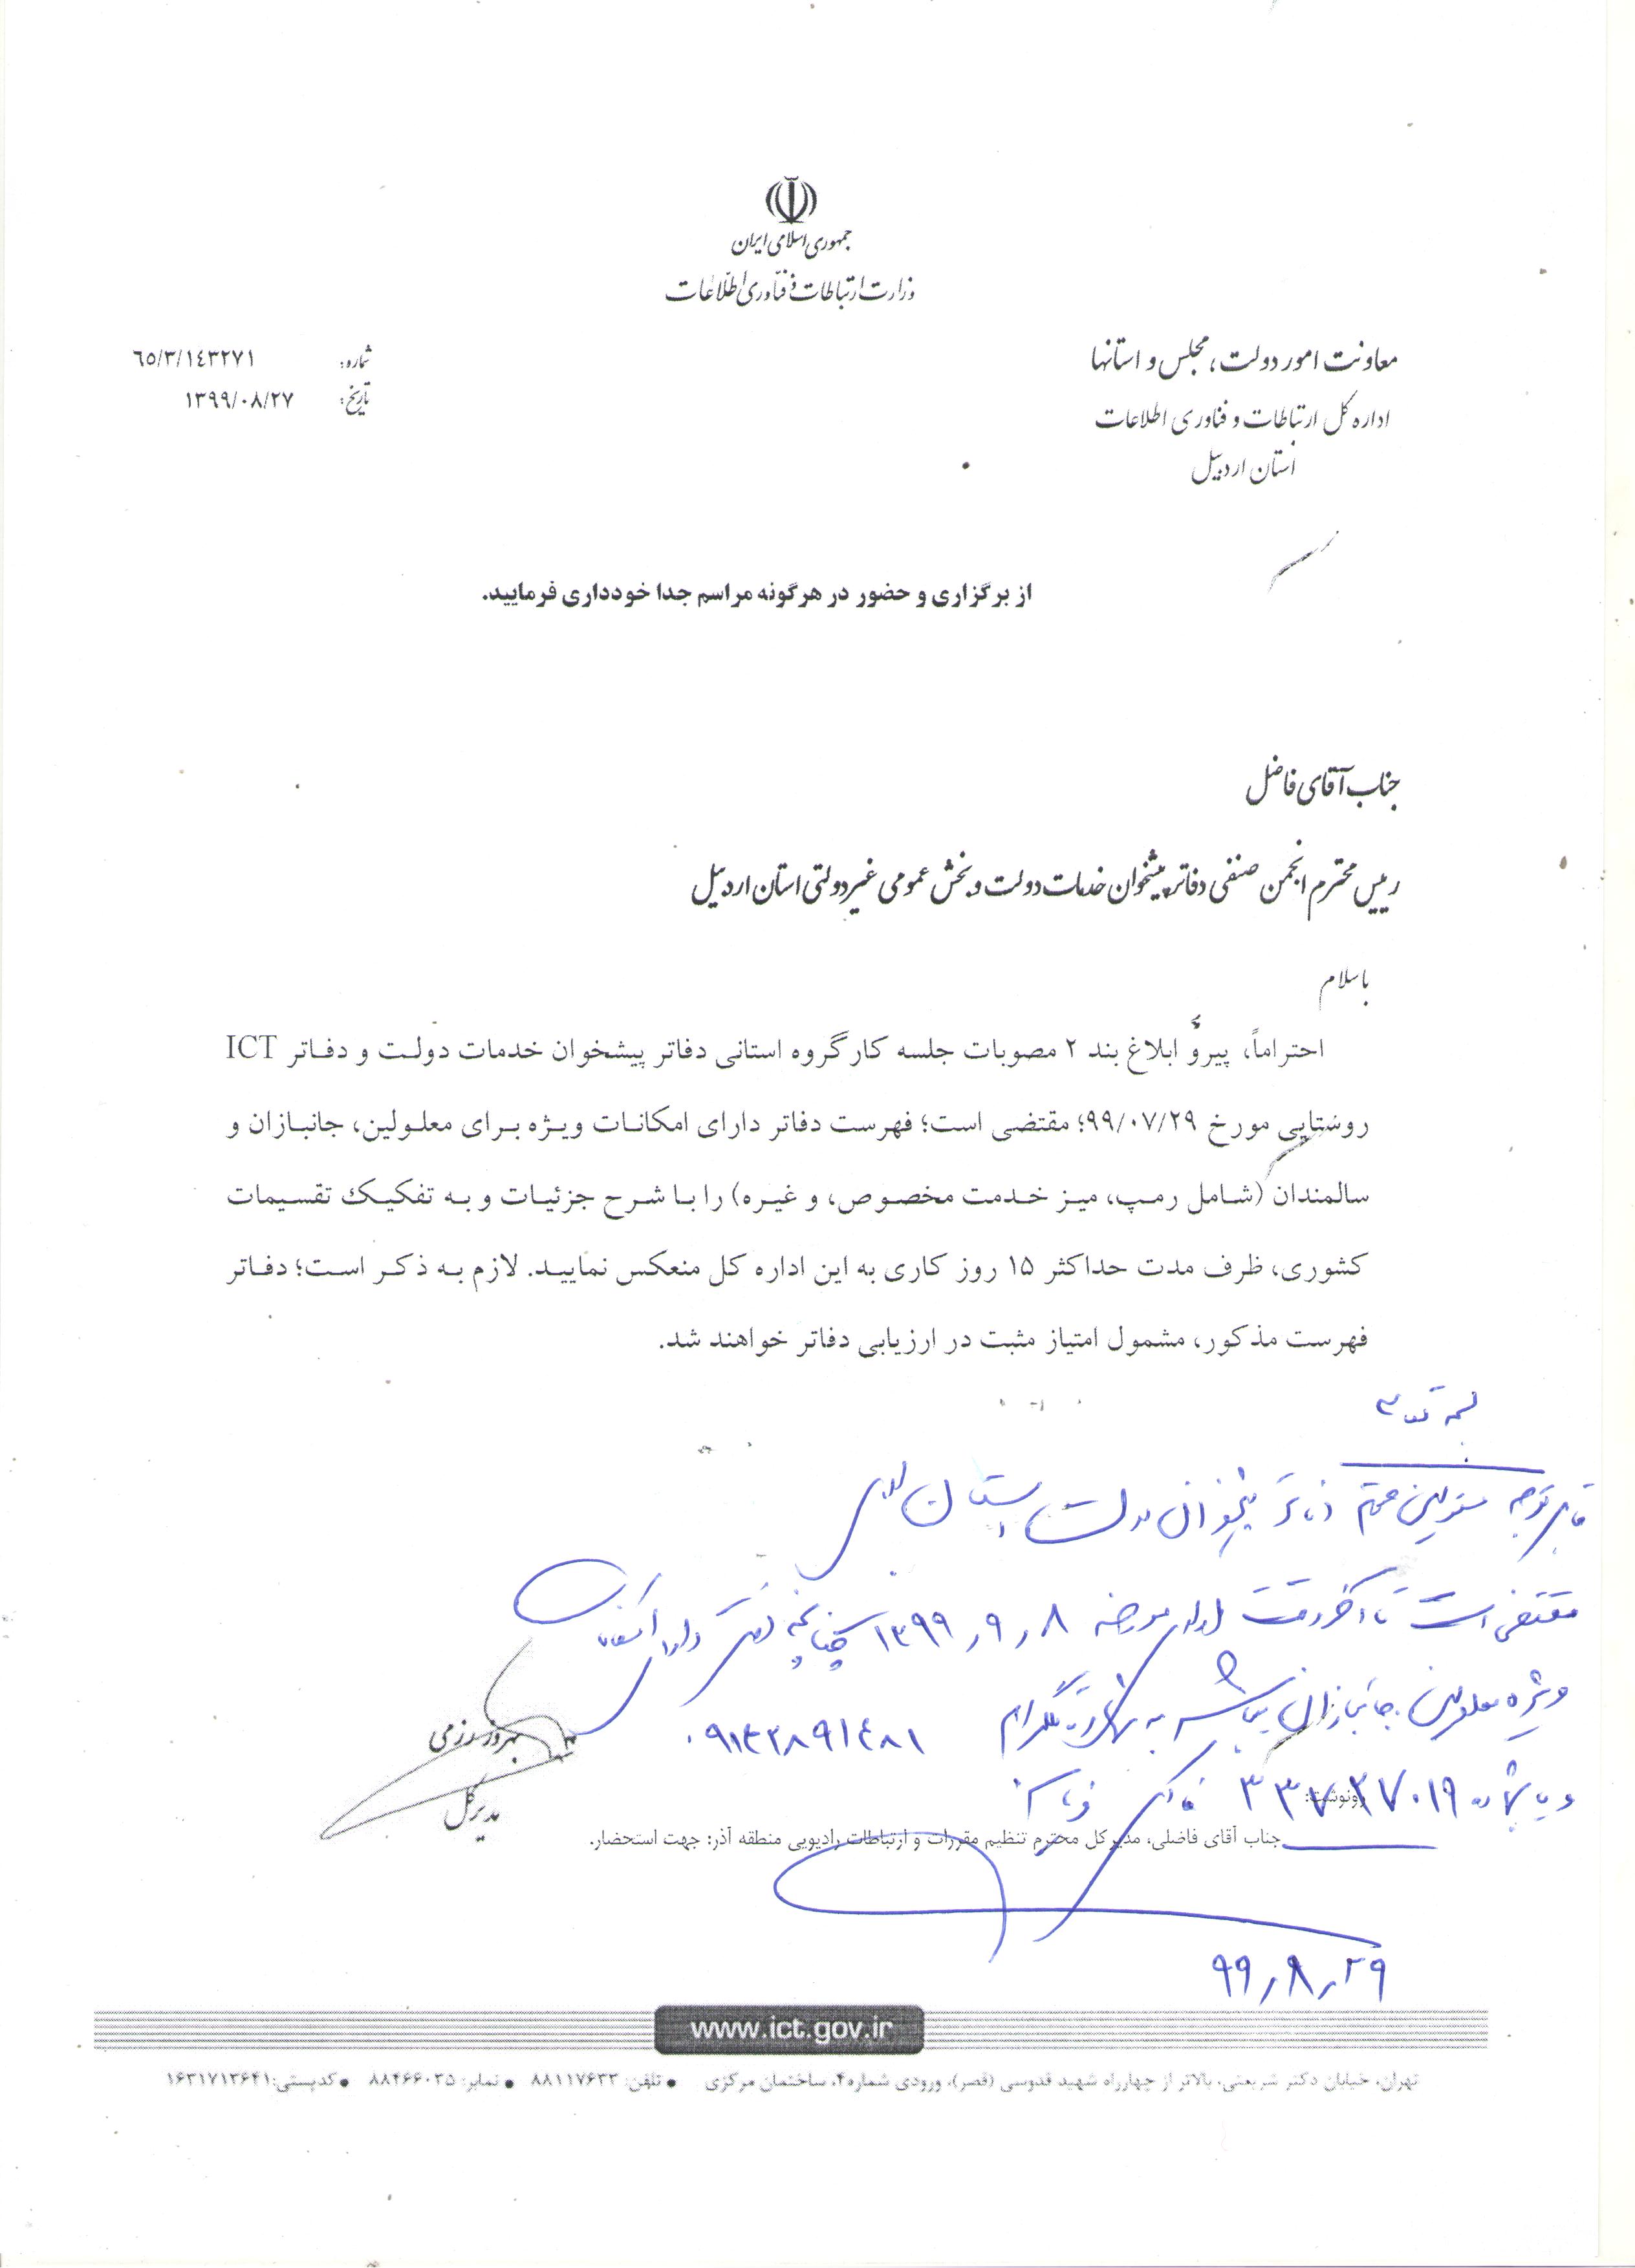 قابل توجه کلیه مسئولین محترم دفاتر پیشخوان دولت استان اردبیل